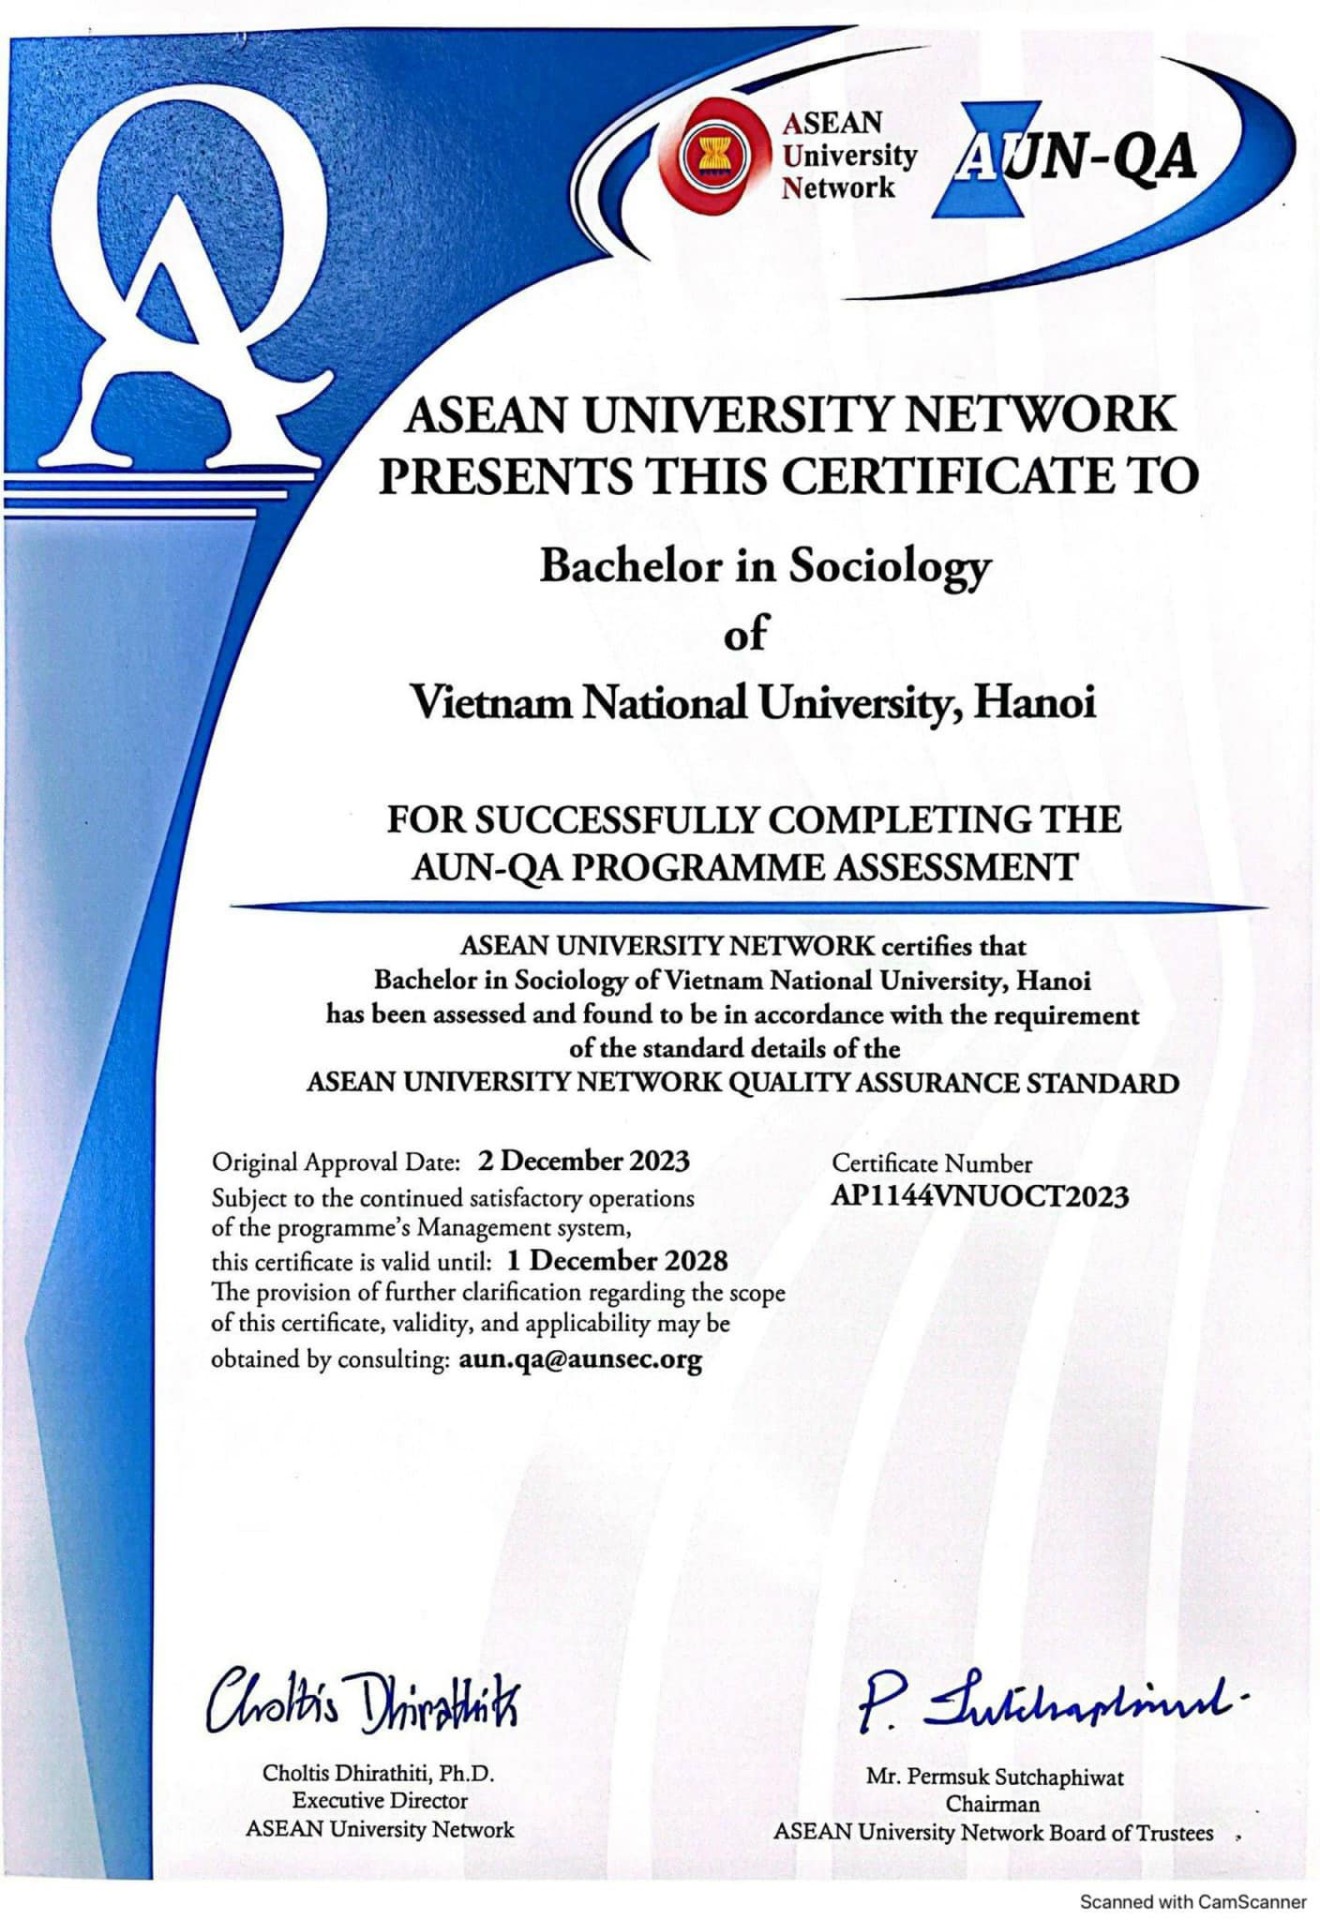 Khoa Xã hội học chính thức nhận được chứng chỉ công nhận tiêu chuẩn đảm bảo chất lượng đánh giá AUN chuyên ngành Xã hội học năm 2023